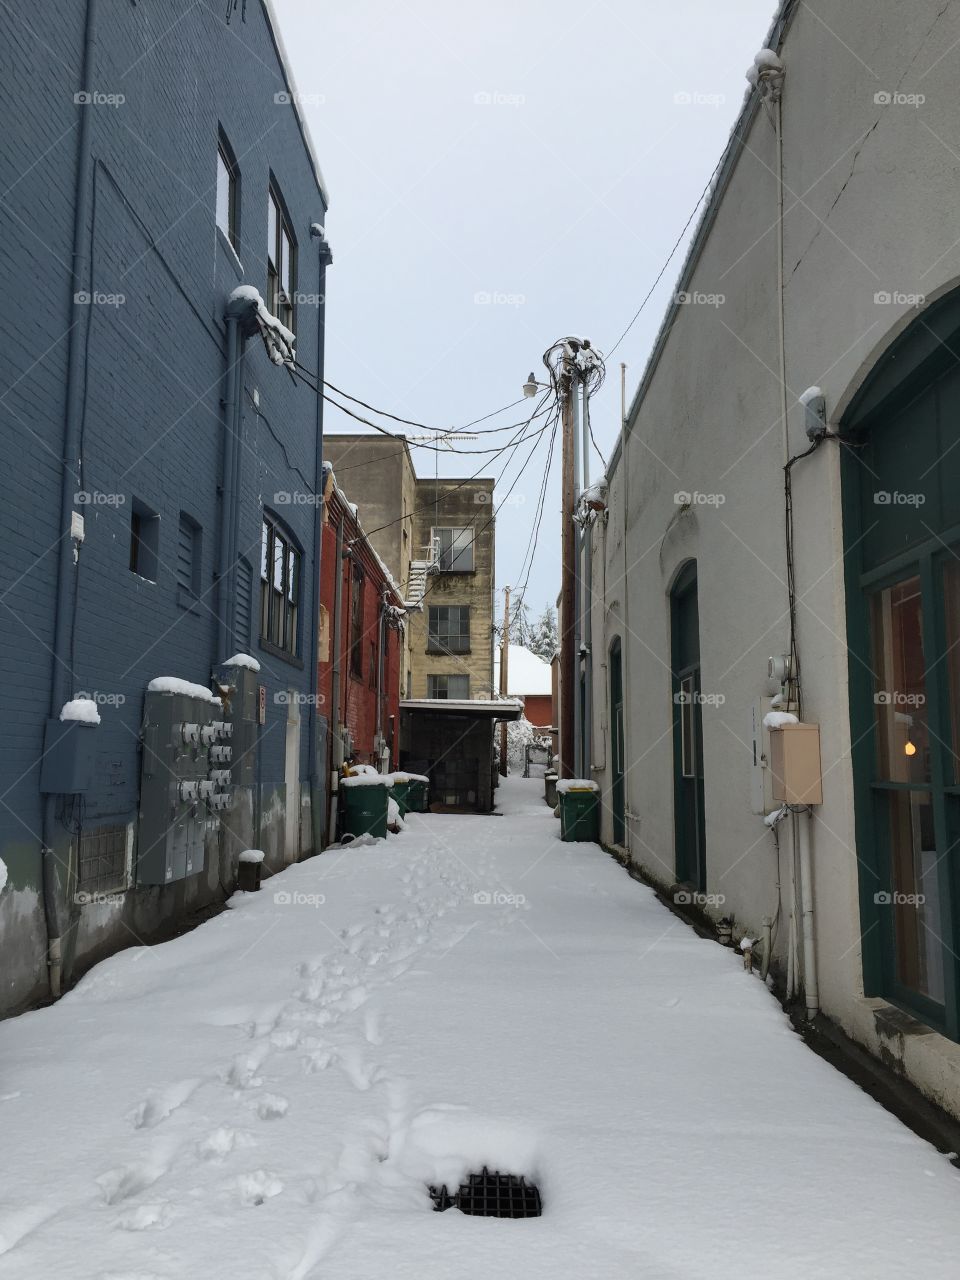 Even alleyways look better in the snow